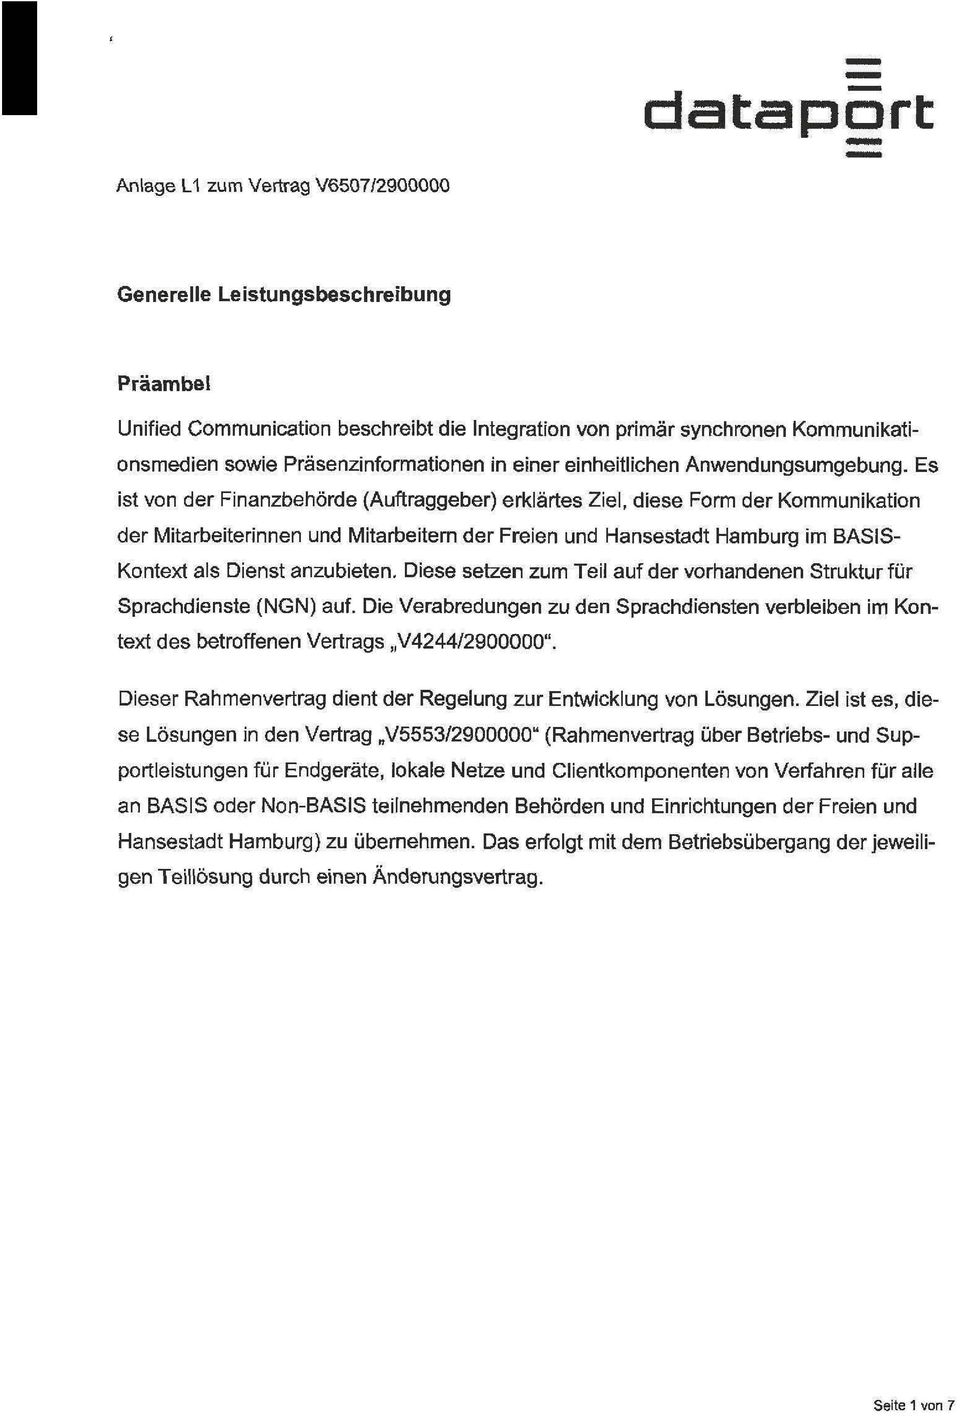 Es ist von der Finanzbehörde (Auftraggeber) erklärtes Ziel, diese Form der Kommunikation der Mitarbeiterinnen und Mitarbeitern der Freien und Hansestadt Hamburg im BASIS Kontext als Dienst anzubieten.